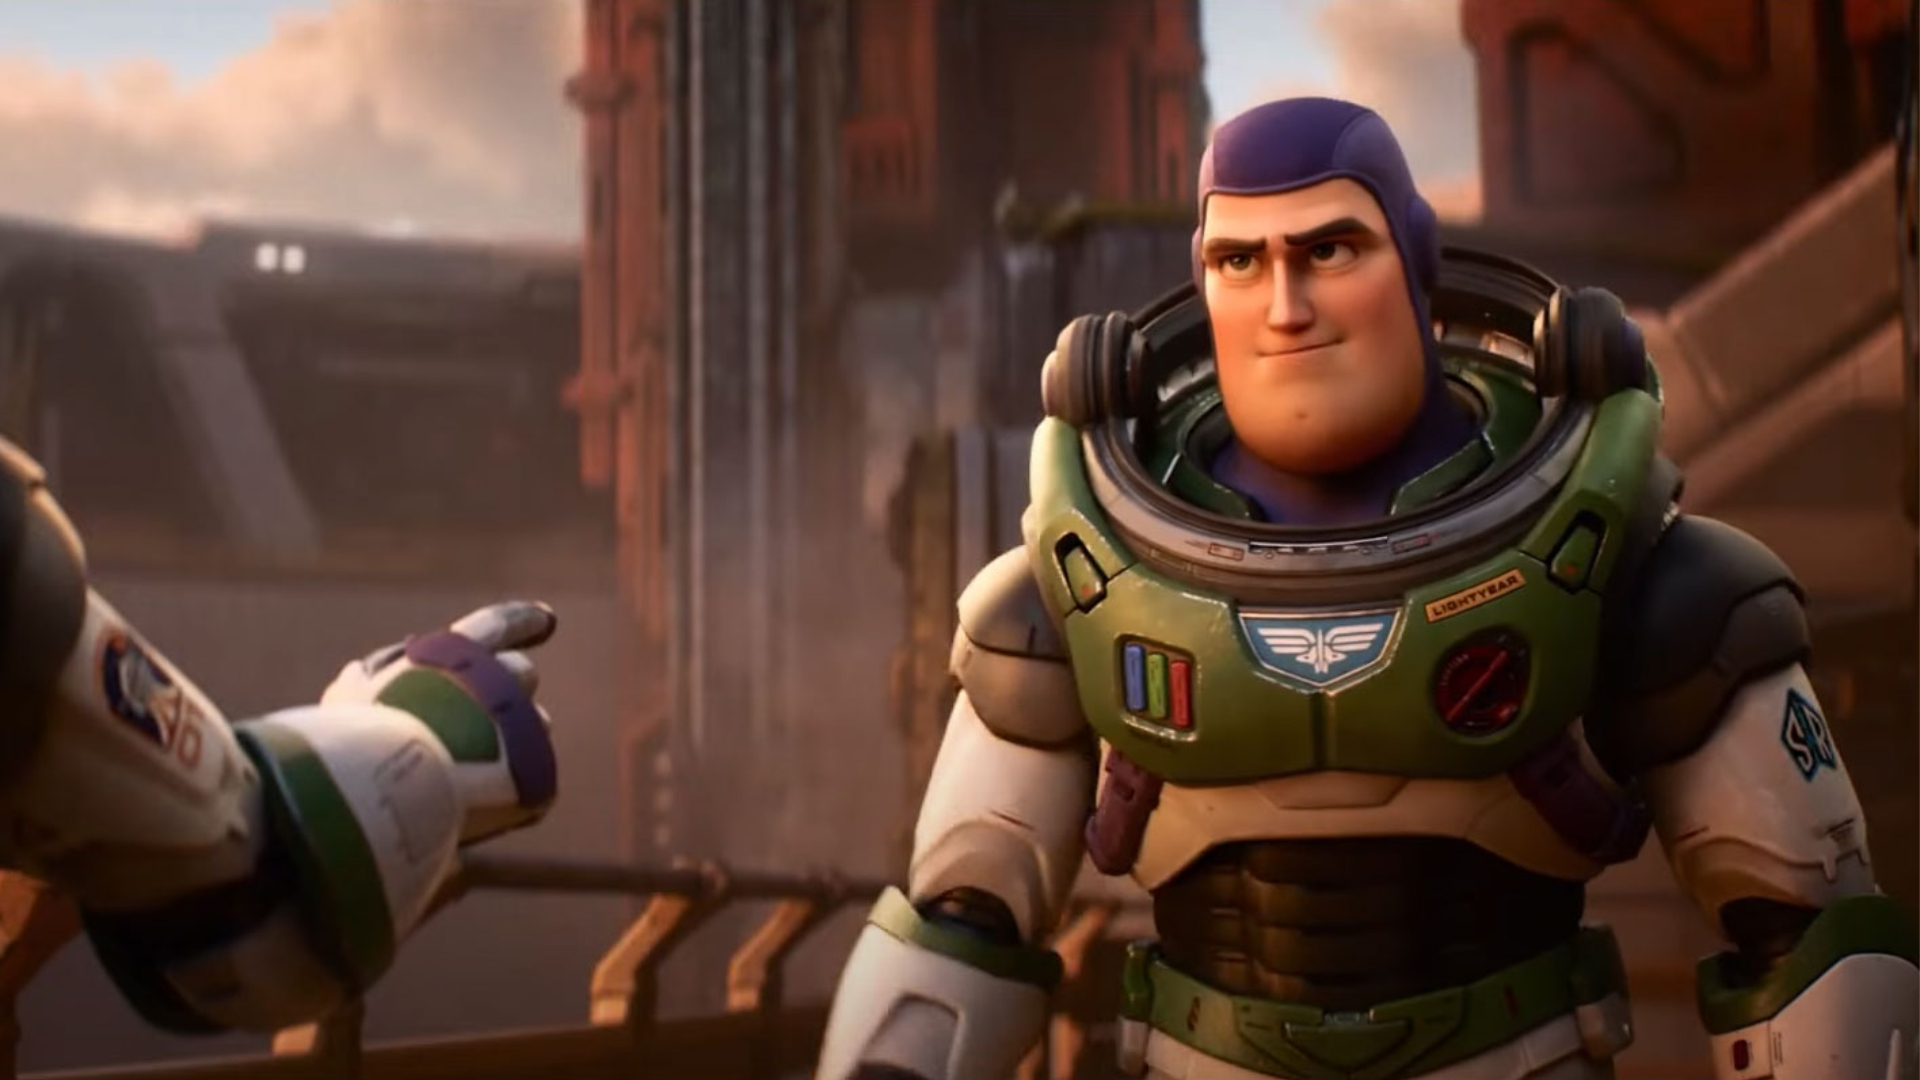 Novo filme da Pixar, Lightyear é banido em territórios da Ásia Ocidental